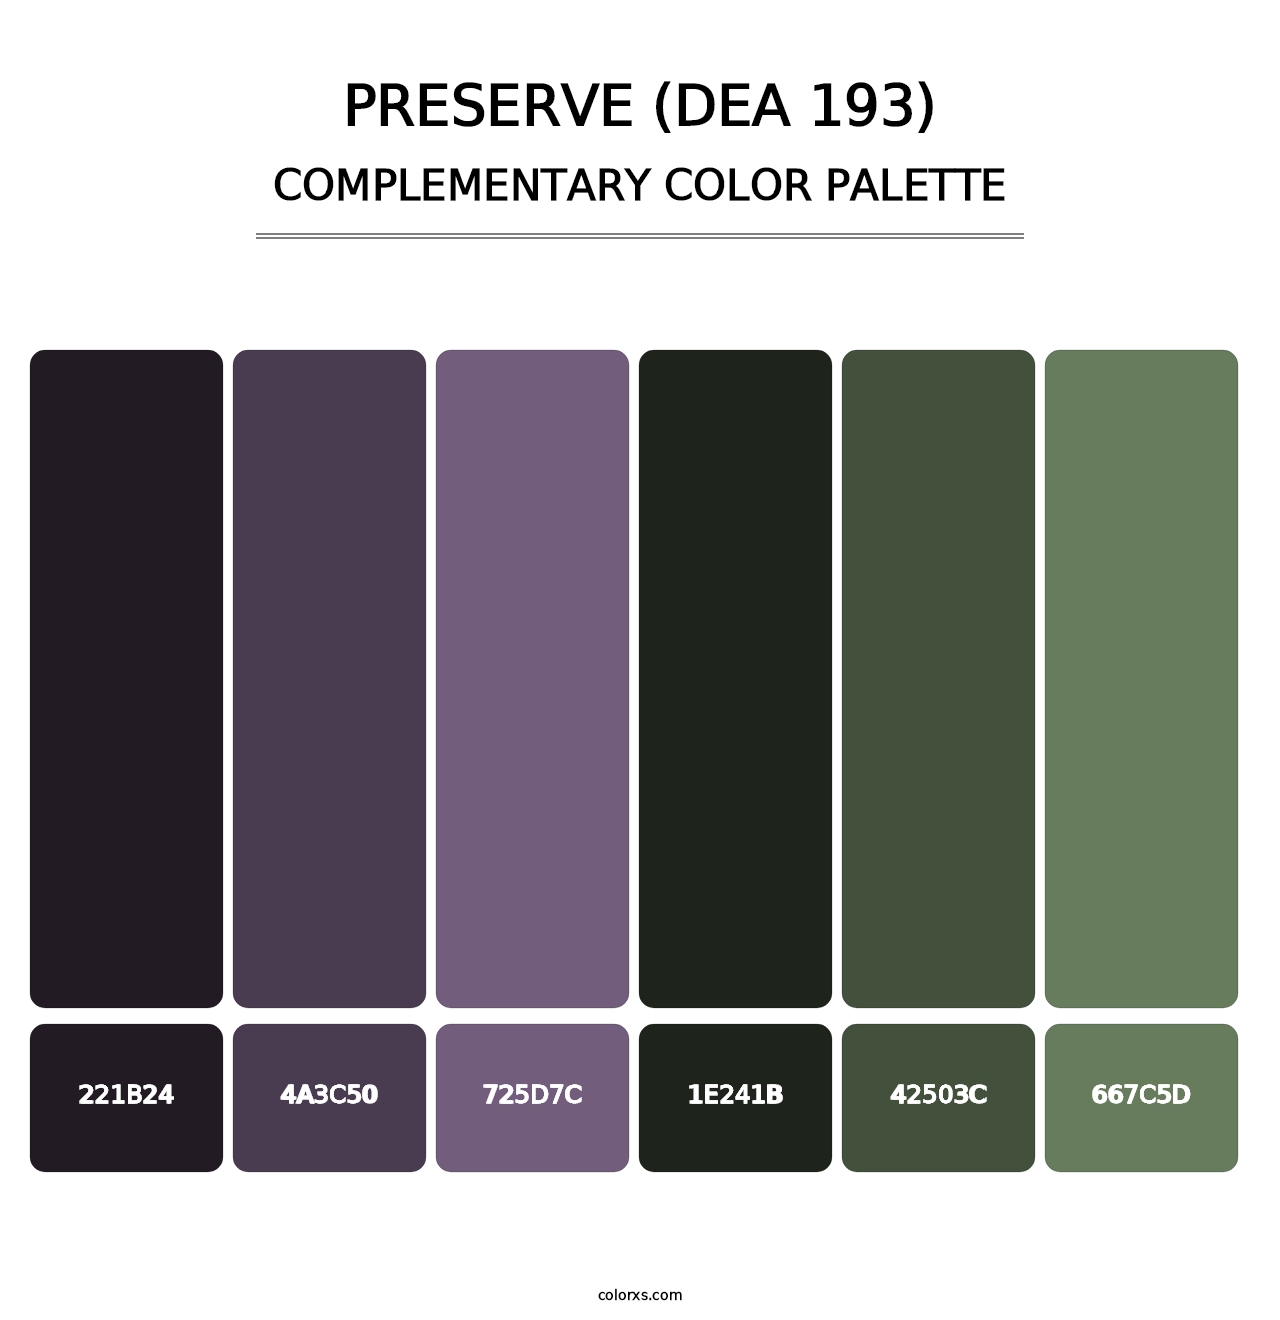 Preserve (DEA 193) - Complementary Color Palette